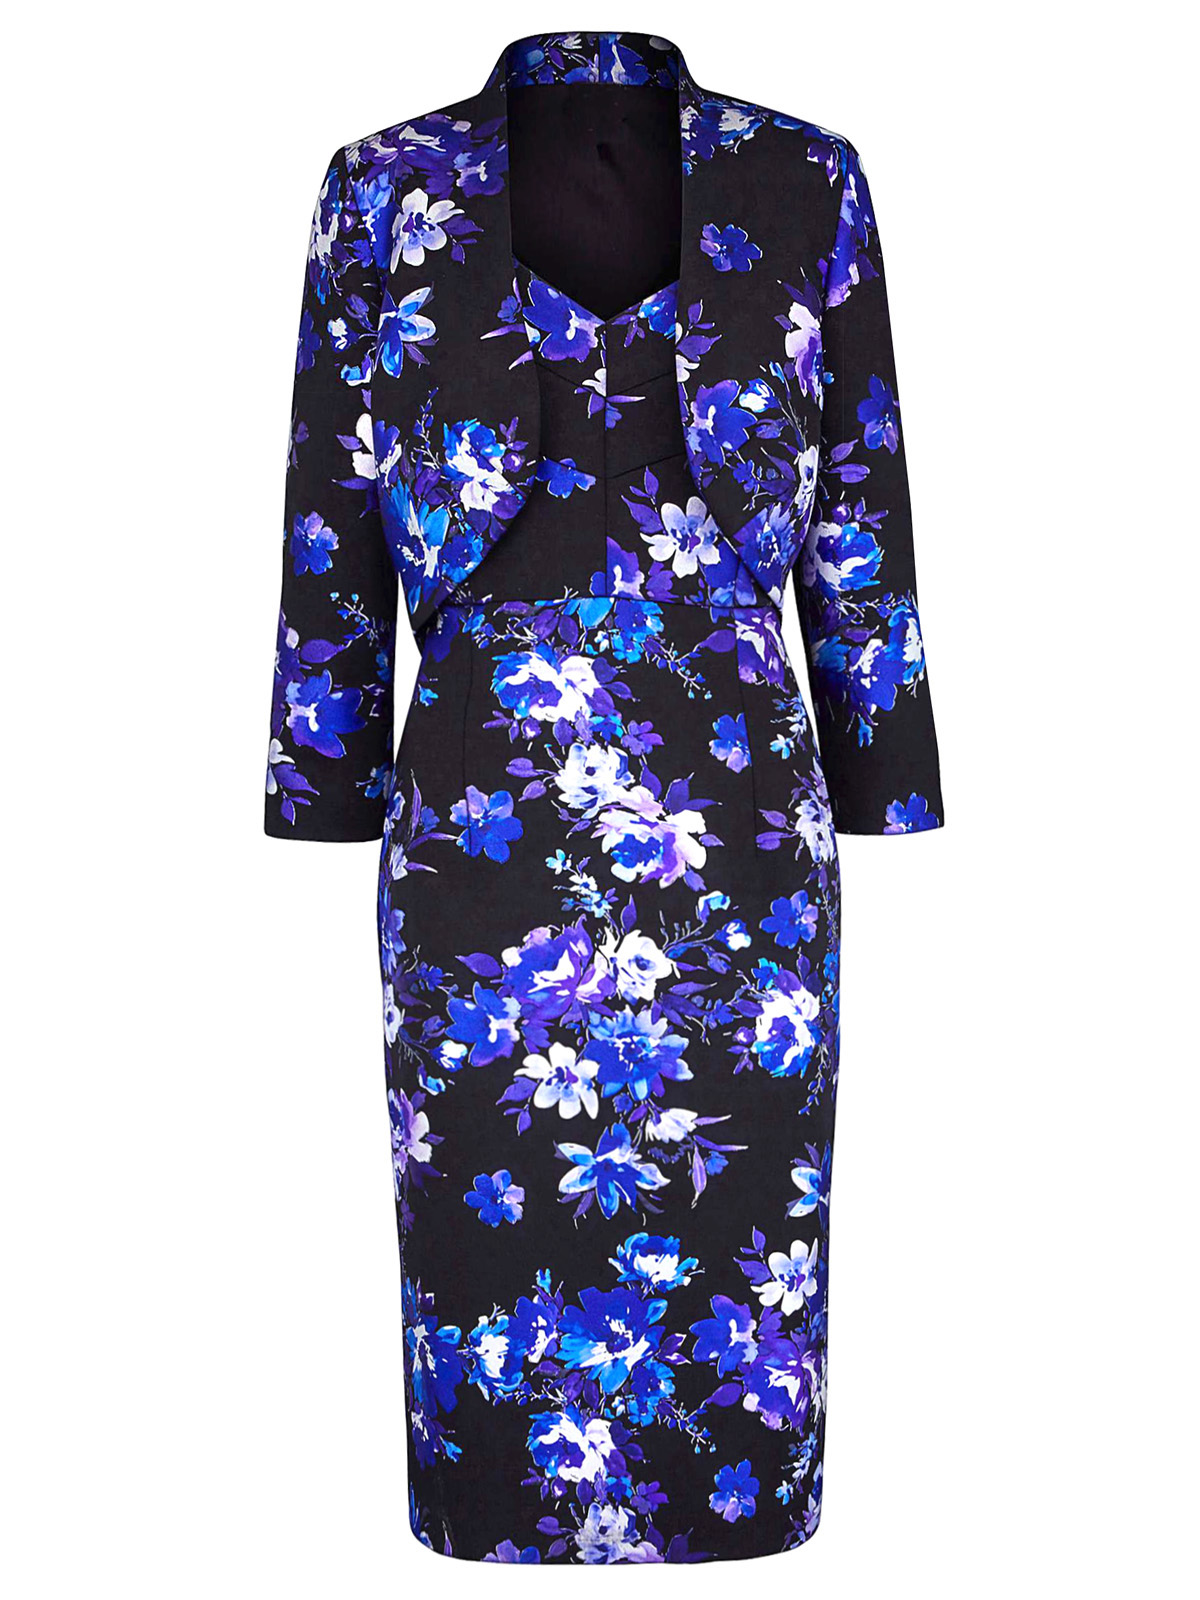 Nightingales - - Nightingales BLACK/PURPLE Floral Print Dress & Jacket ...